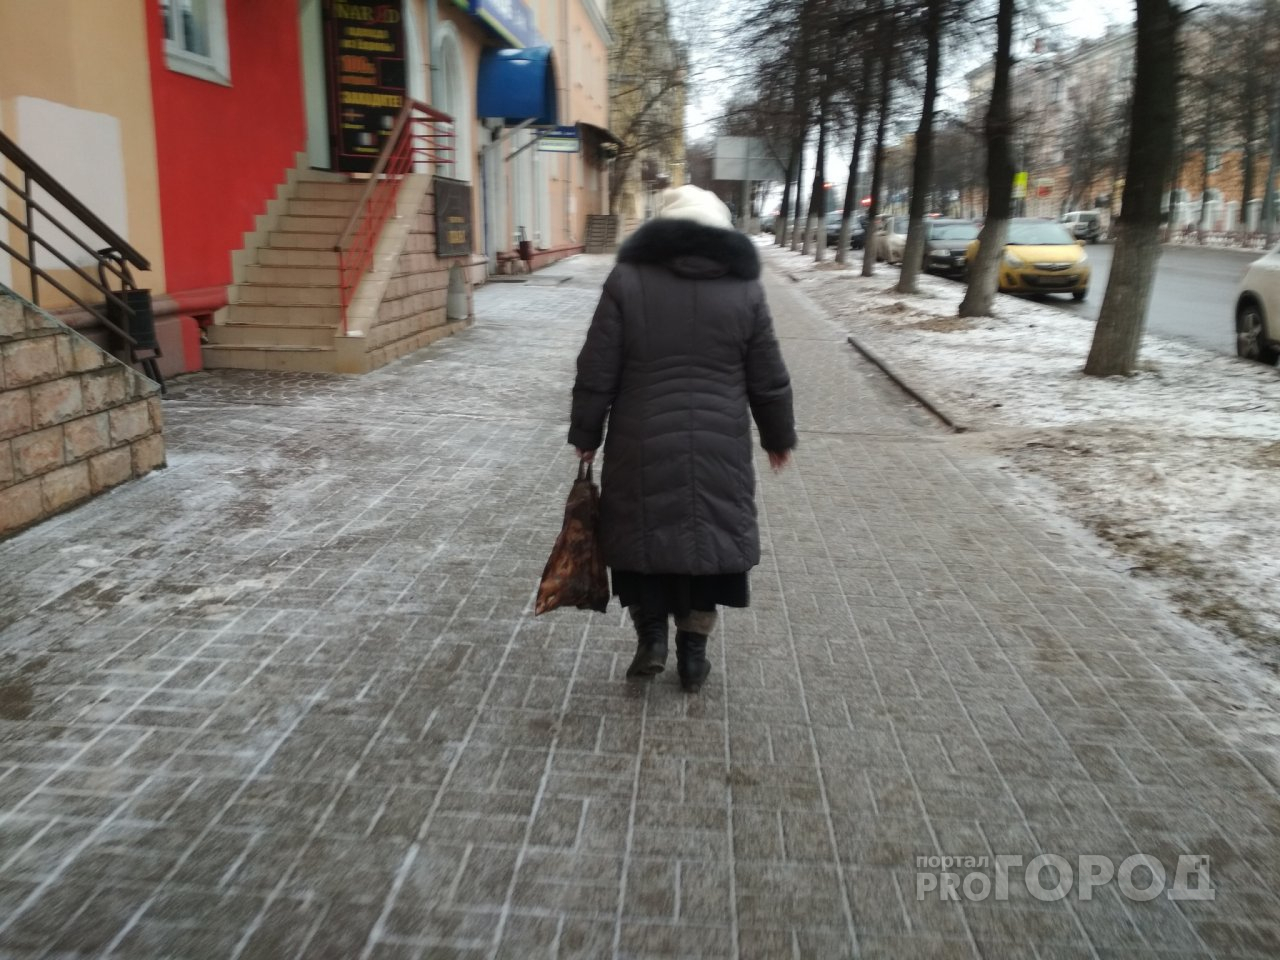 Ярославцы не доживут: в Госдуме предложили передавать пенсию по наследству